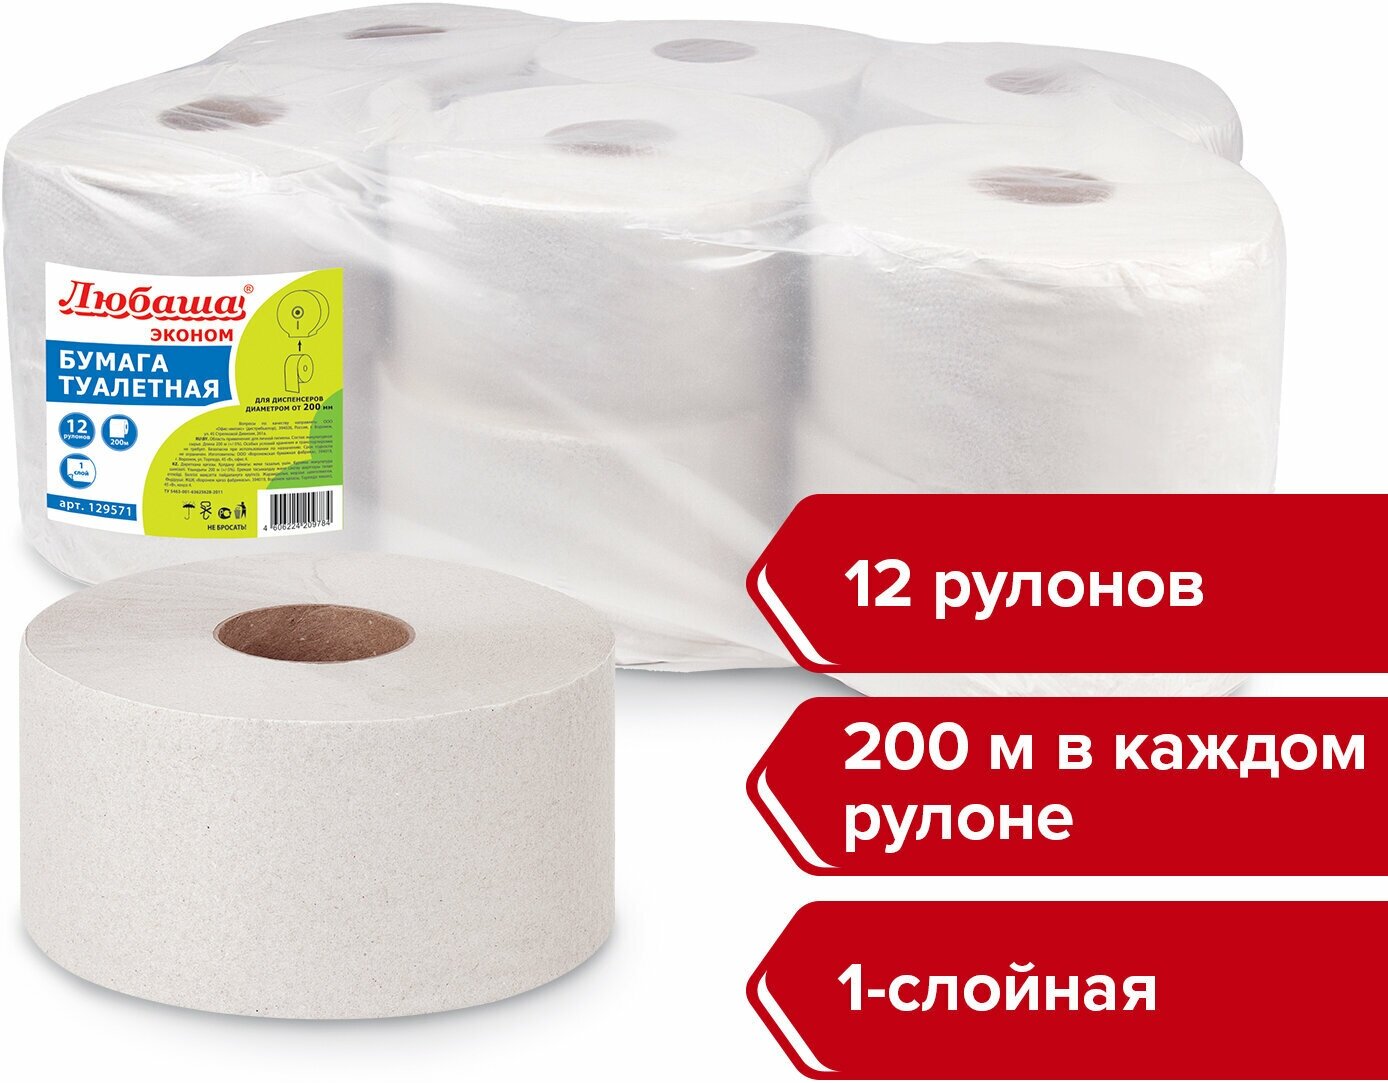 Бумага туалетная 200м, любаша (T2), 1-сл, цвет серый, комплект 12рул, 129571